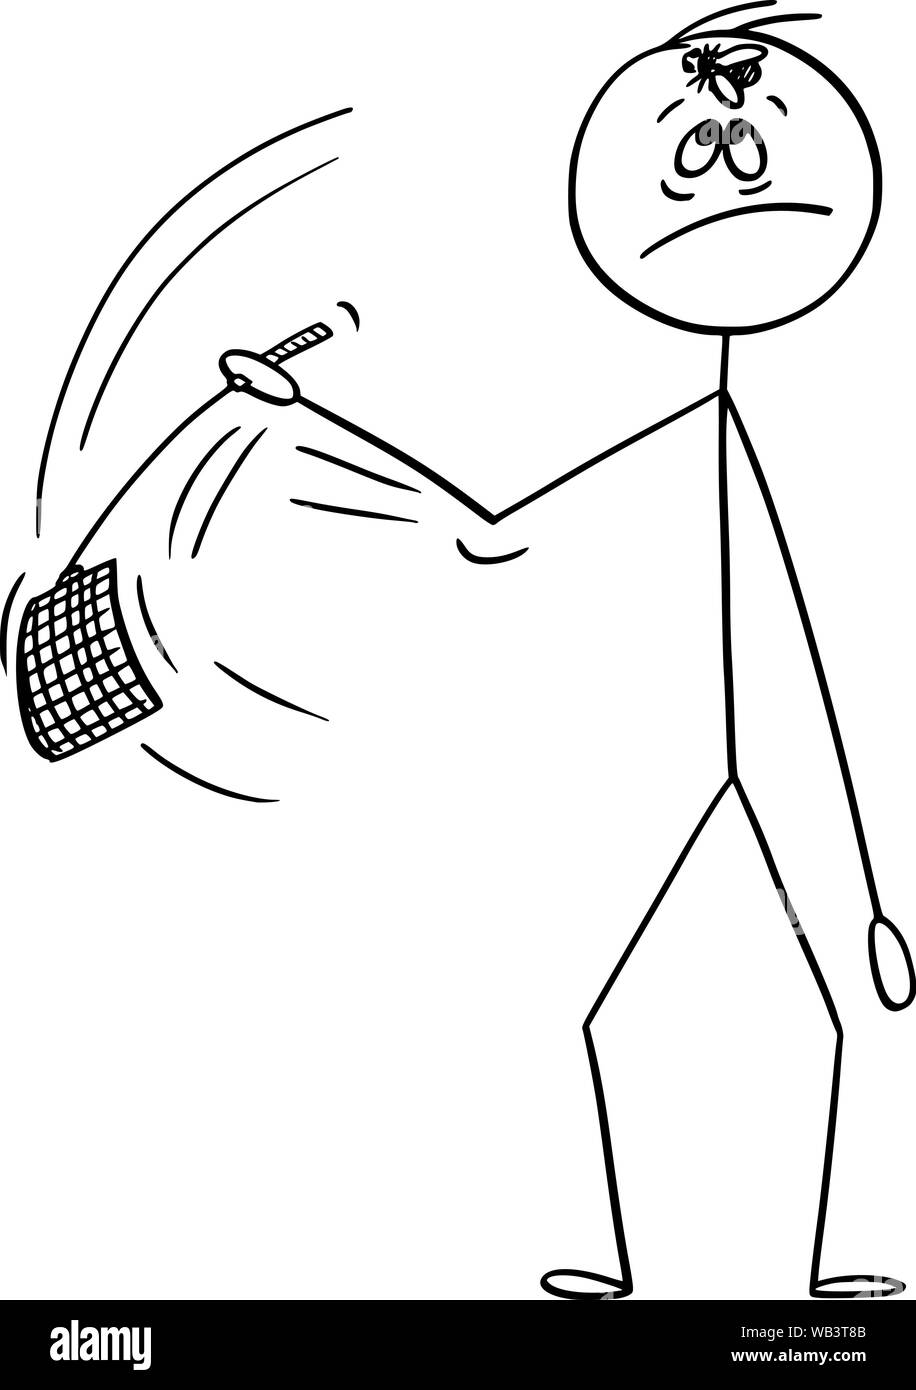 Vector cartoon stick figure dessin illustration conceptuelle de l'homme aller à la volée de swat assis sur le front avec hos, tapette à mouche ou rabat-trappe. Illustration de Vecteur